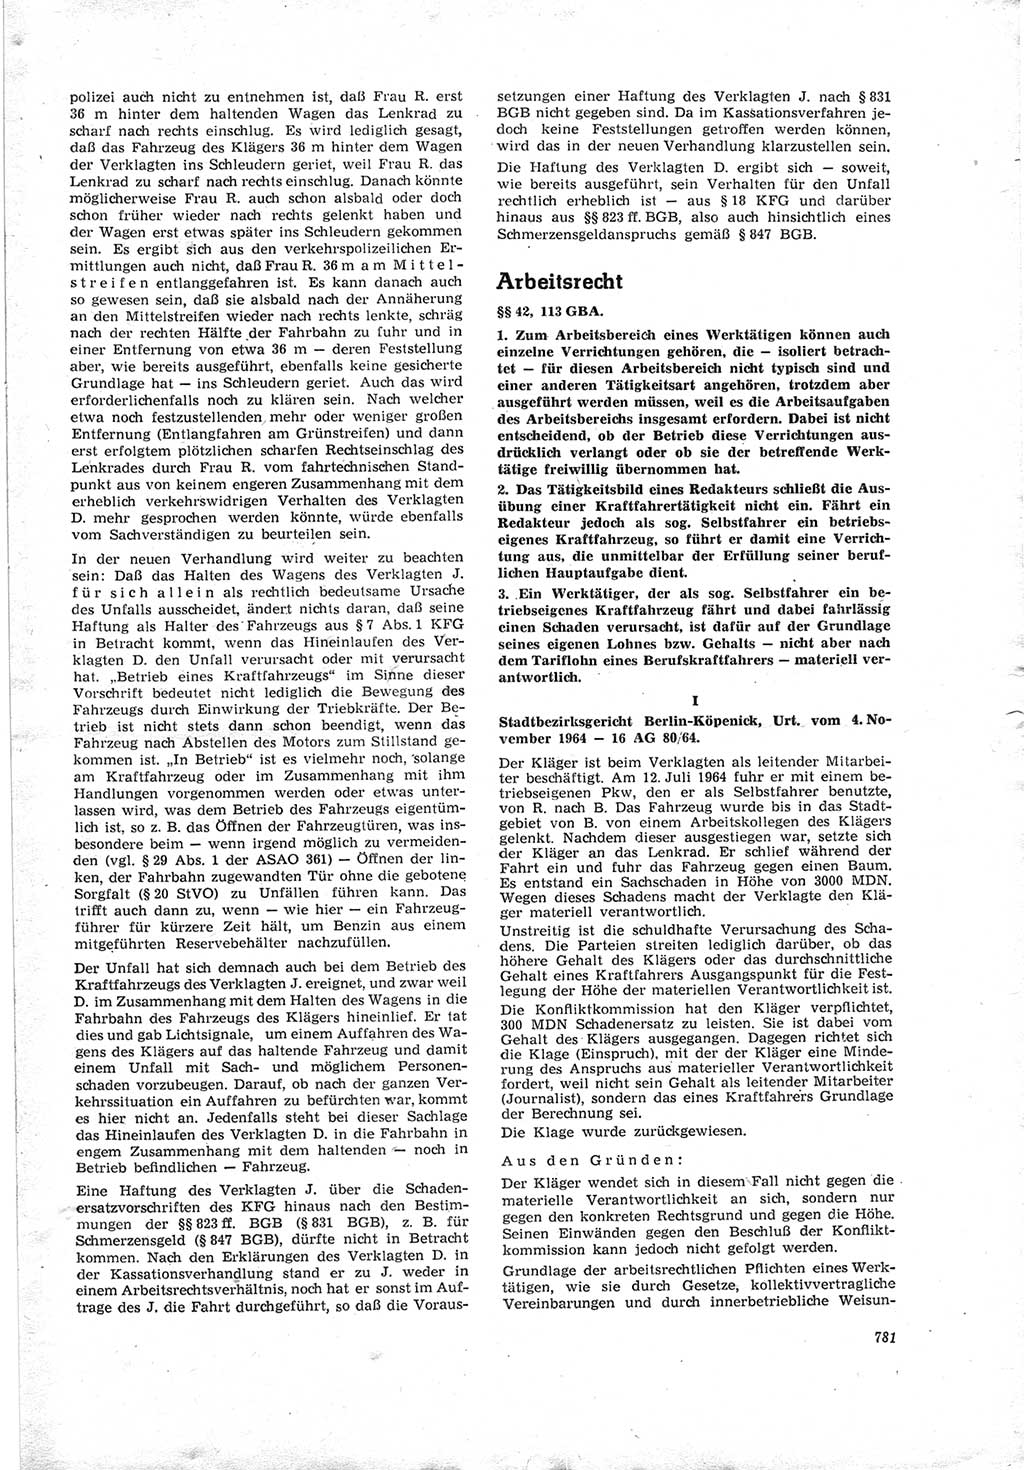 Neue Justiz (NJ), Zeitschrift für Recht und Rechtswissenschaft [Deutsche Demokratische Republik (DDR)], 19. Jahrgang 1965, Seite 781 (NJ DDR 1965, S. 781)